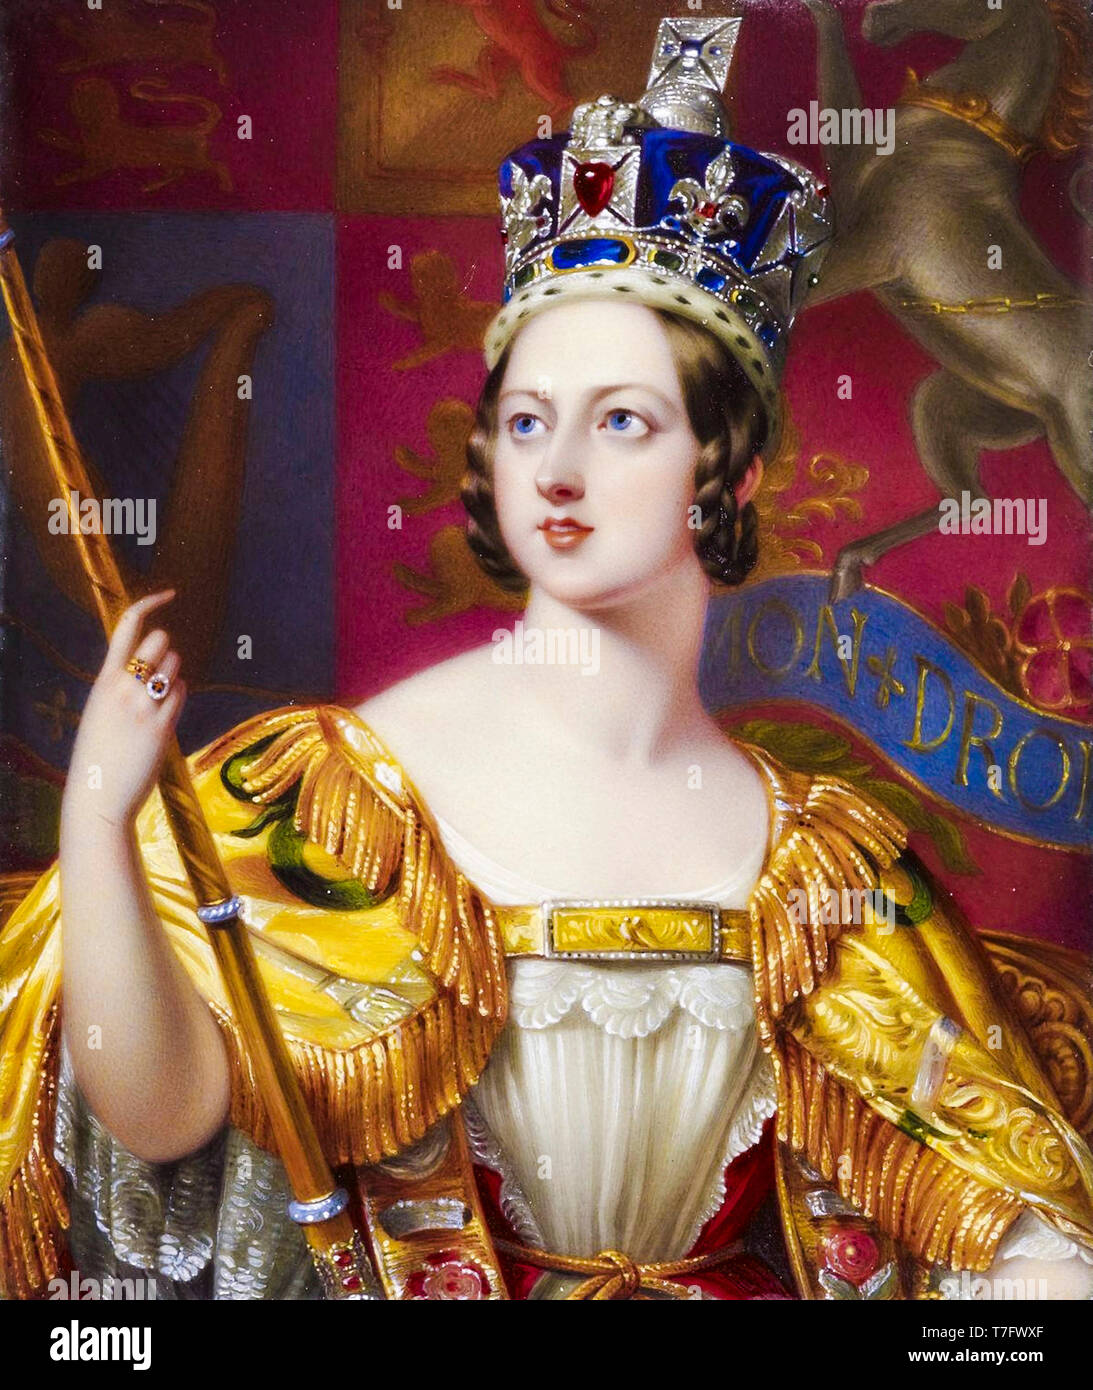 La reina Victoria en su abrigo de coronación con el Estado Imperial Crown, retrato, 1843 Foto de stock